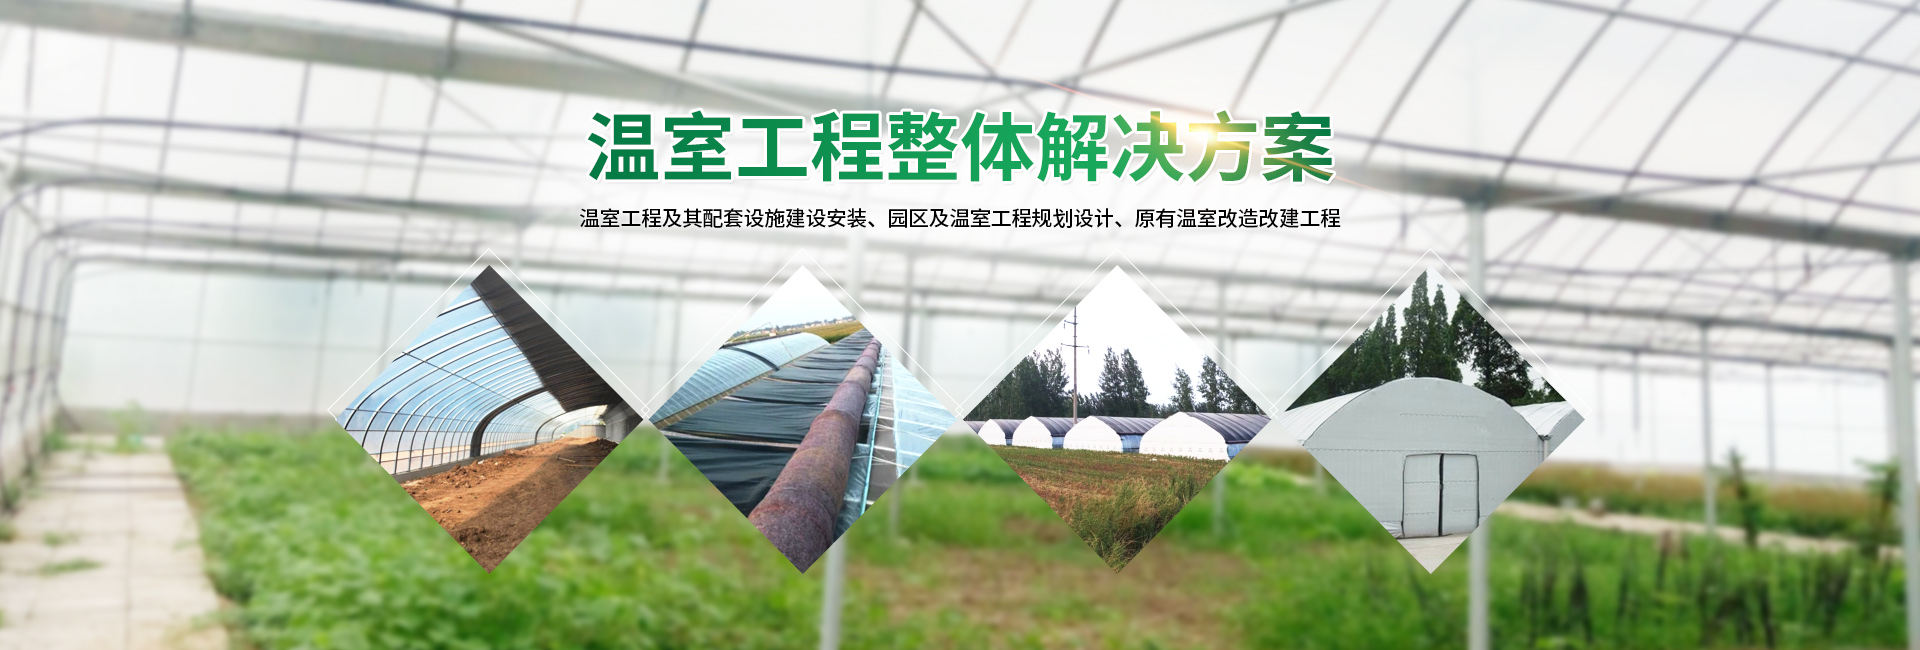 安阳市银丰农业科技有限公司_PC